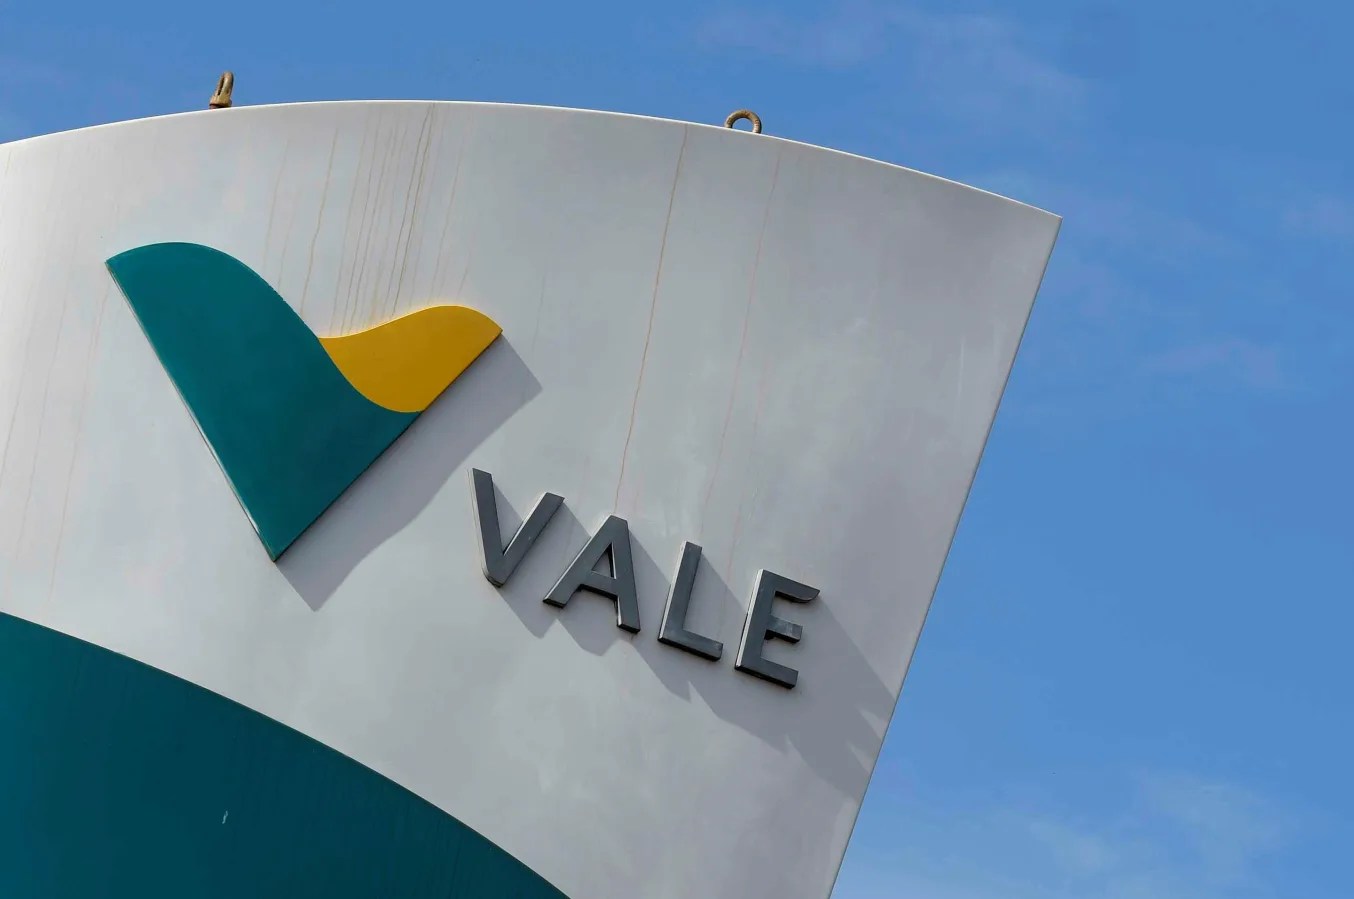 Foto do prédio da sede da mineração da Vale com o logo da empresa e os dizeres 